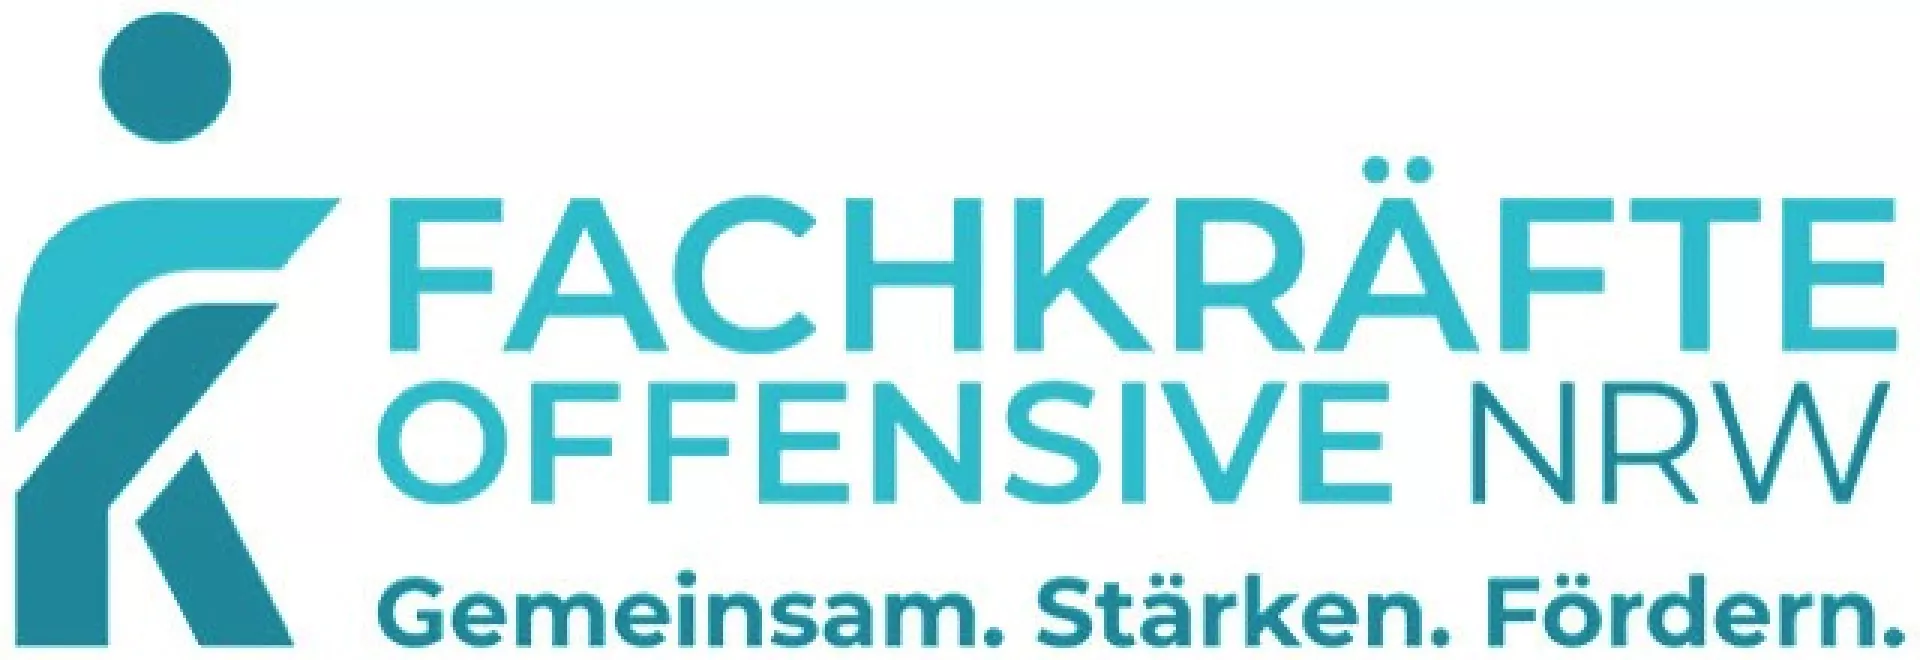 Das Logo der Fachkräfteoffensive NRW. Gemeinsam. Stärken. Fördern.